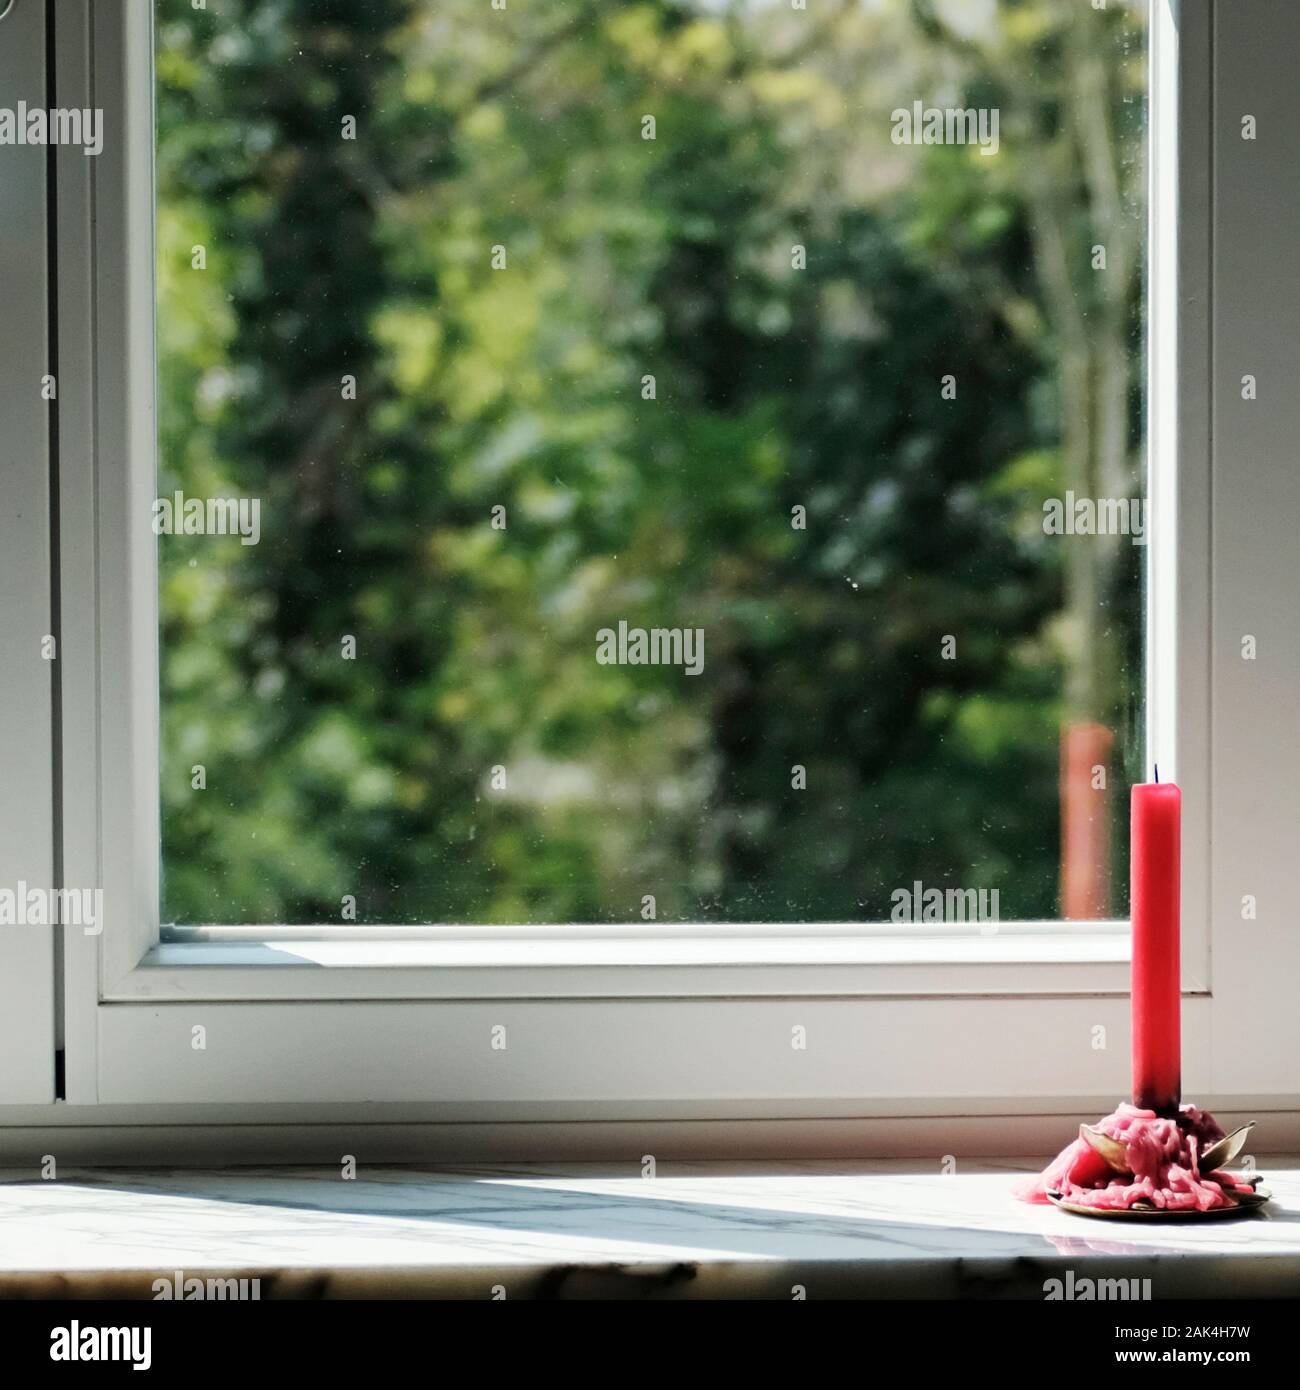 Kerze am Fenster Hintergrund unscharf Stockfotografie - Alamy